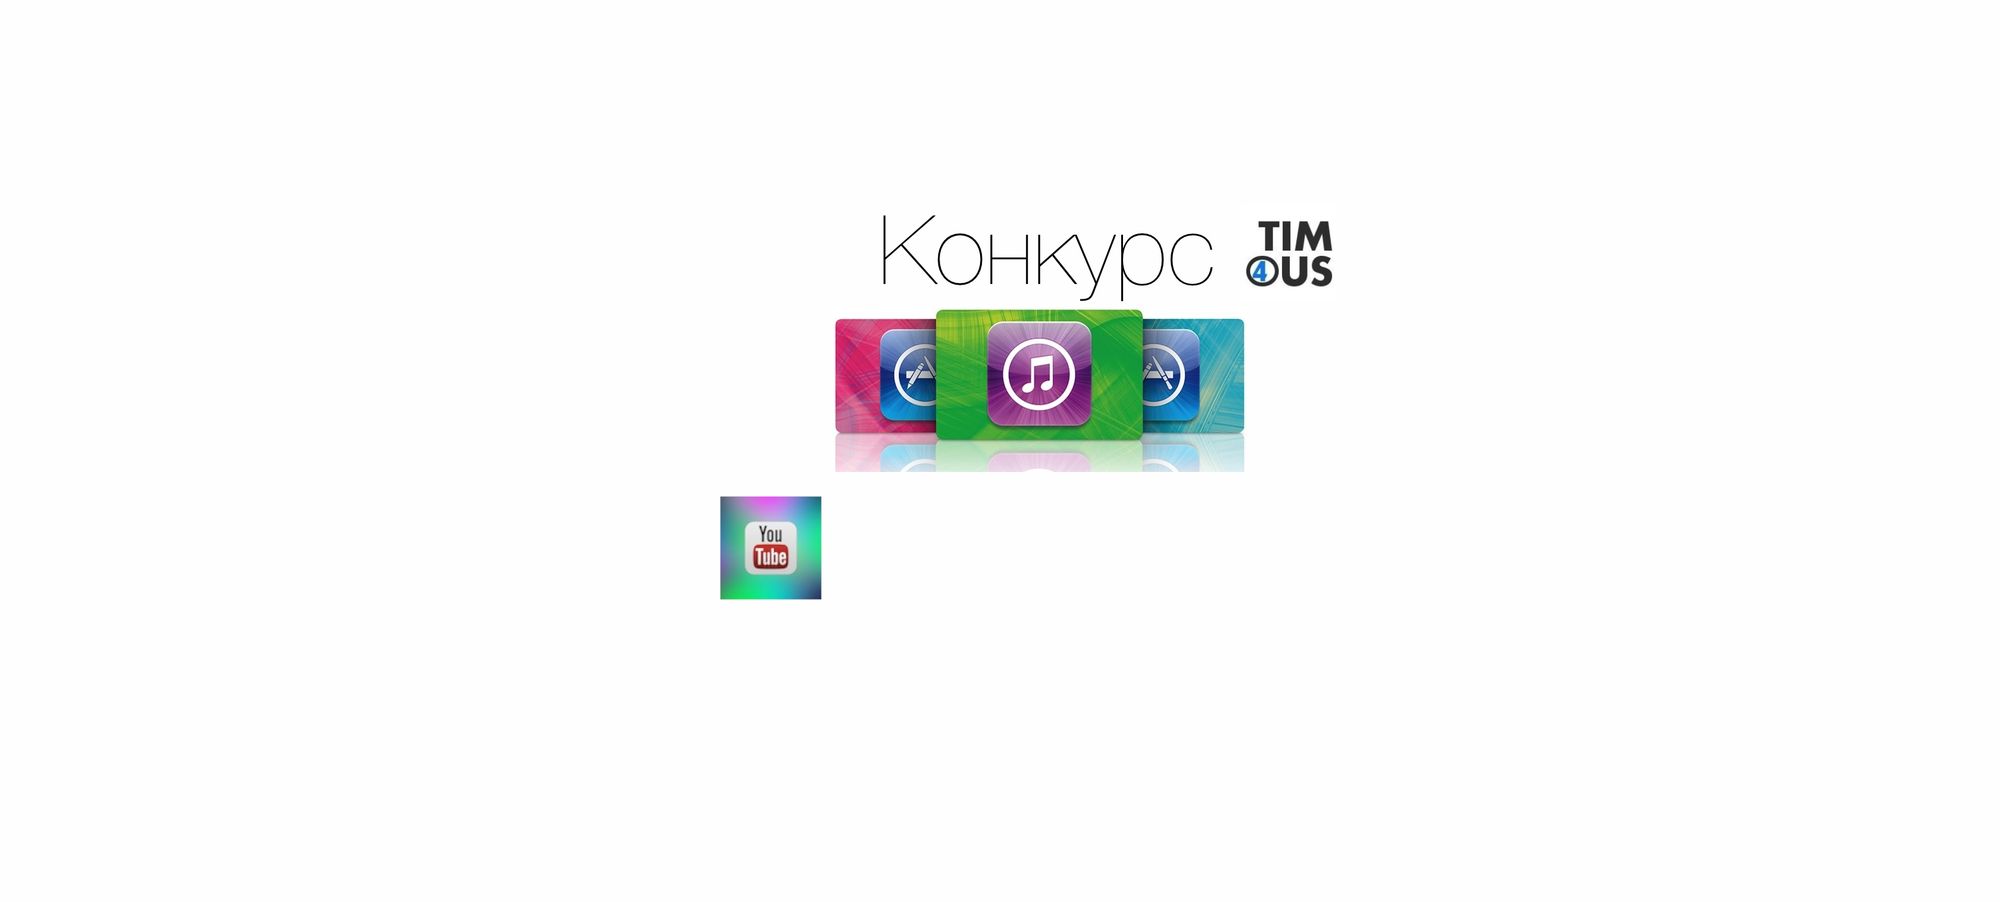 Конкурс на подарочную карту iTunes (500 рублей) от t4s.tech и iDimaProduction